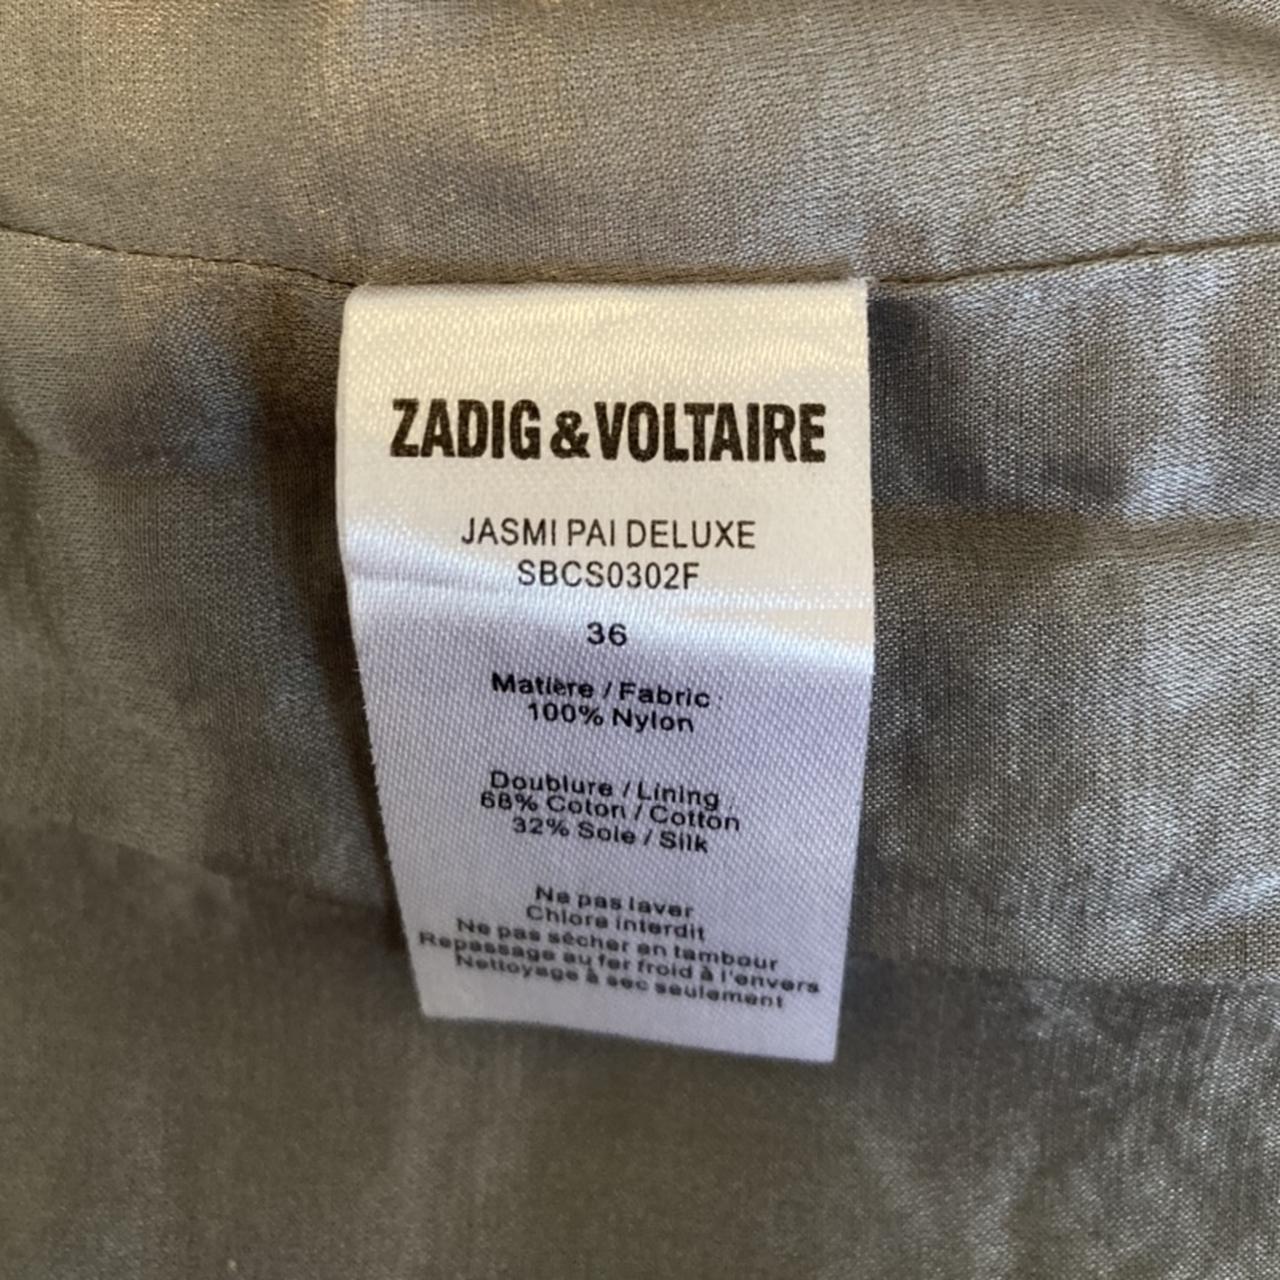 Zadig and Voltaire Jasmi Pai Deluxe Sequin... - Depop